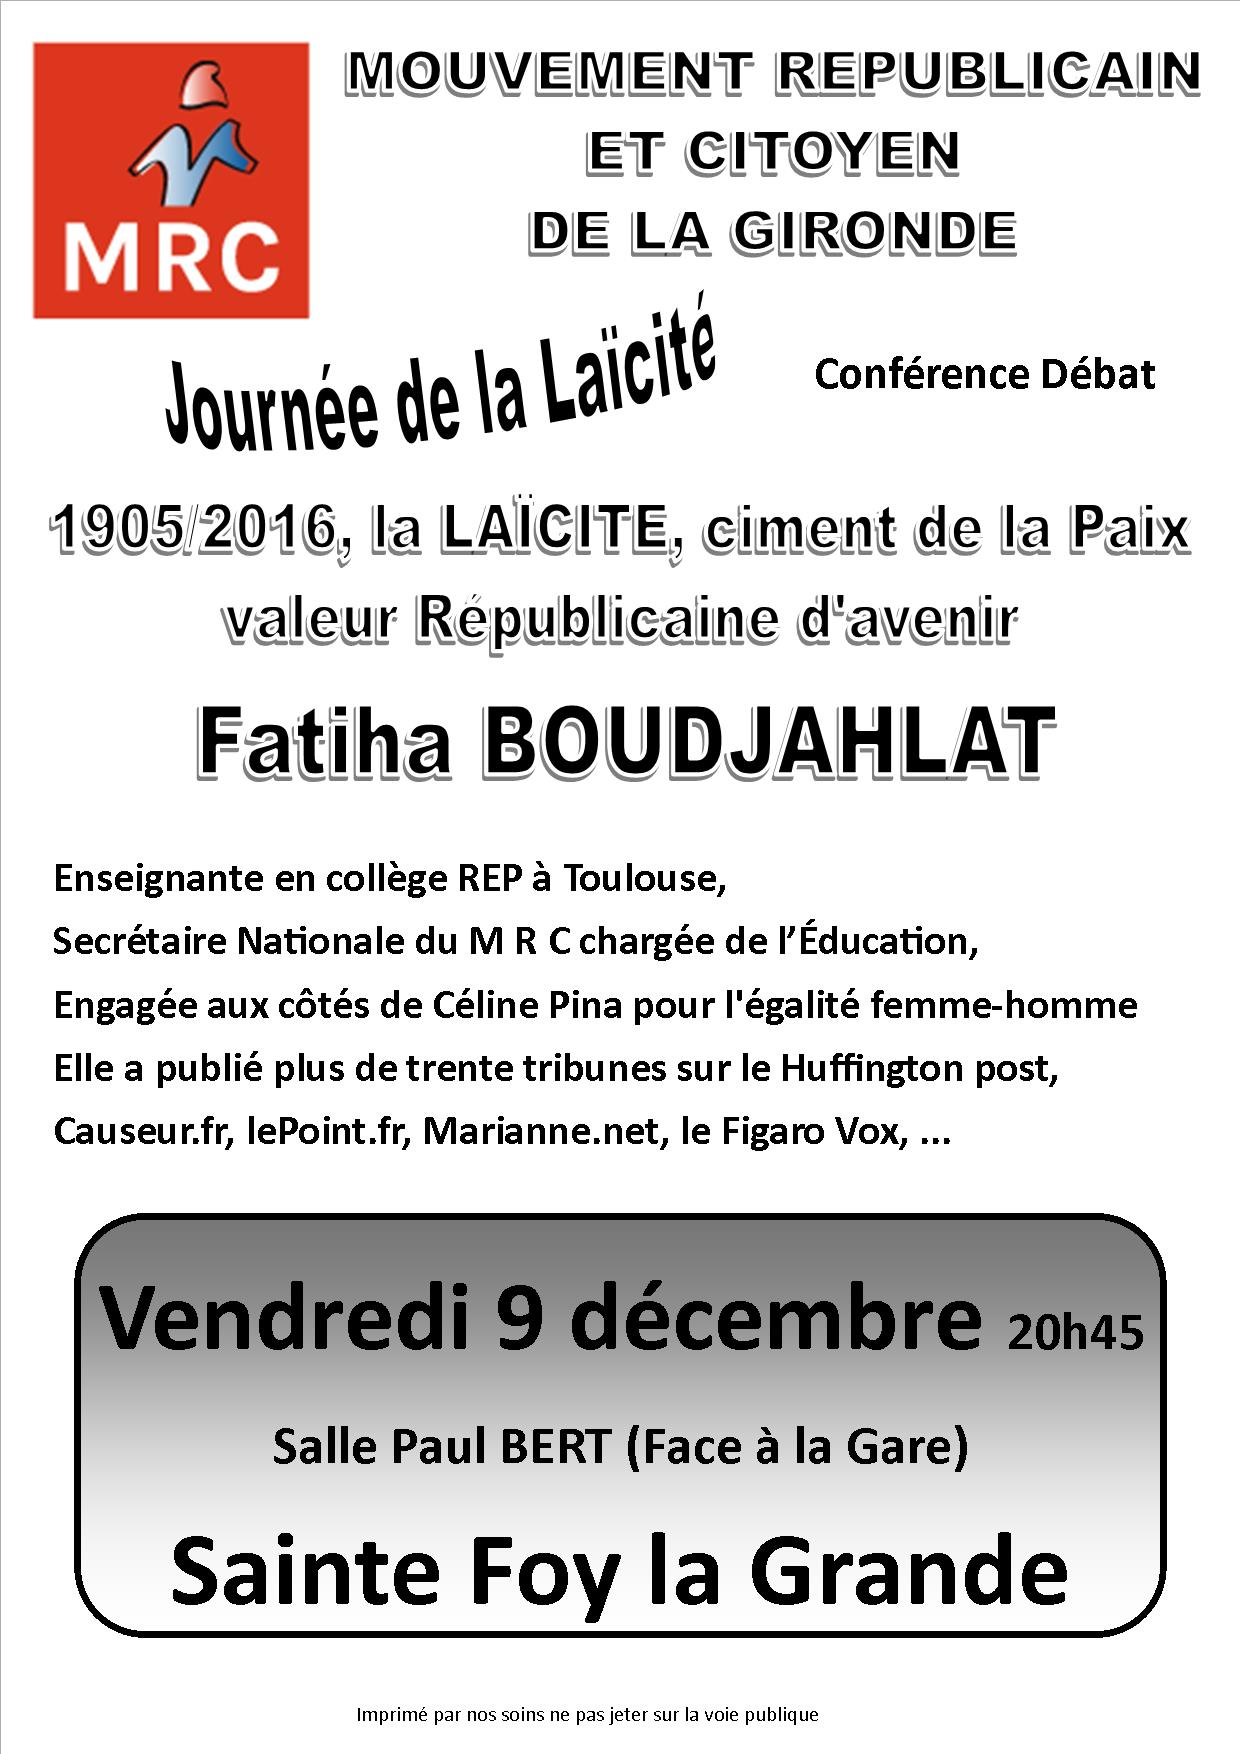 journée de la laïcité: Fatiha Boudjalhat le 9 décembre 2016 à 20 heures 45 salle Paul Bert à Sainte Foy la Grande